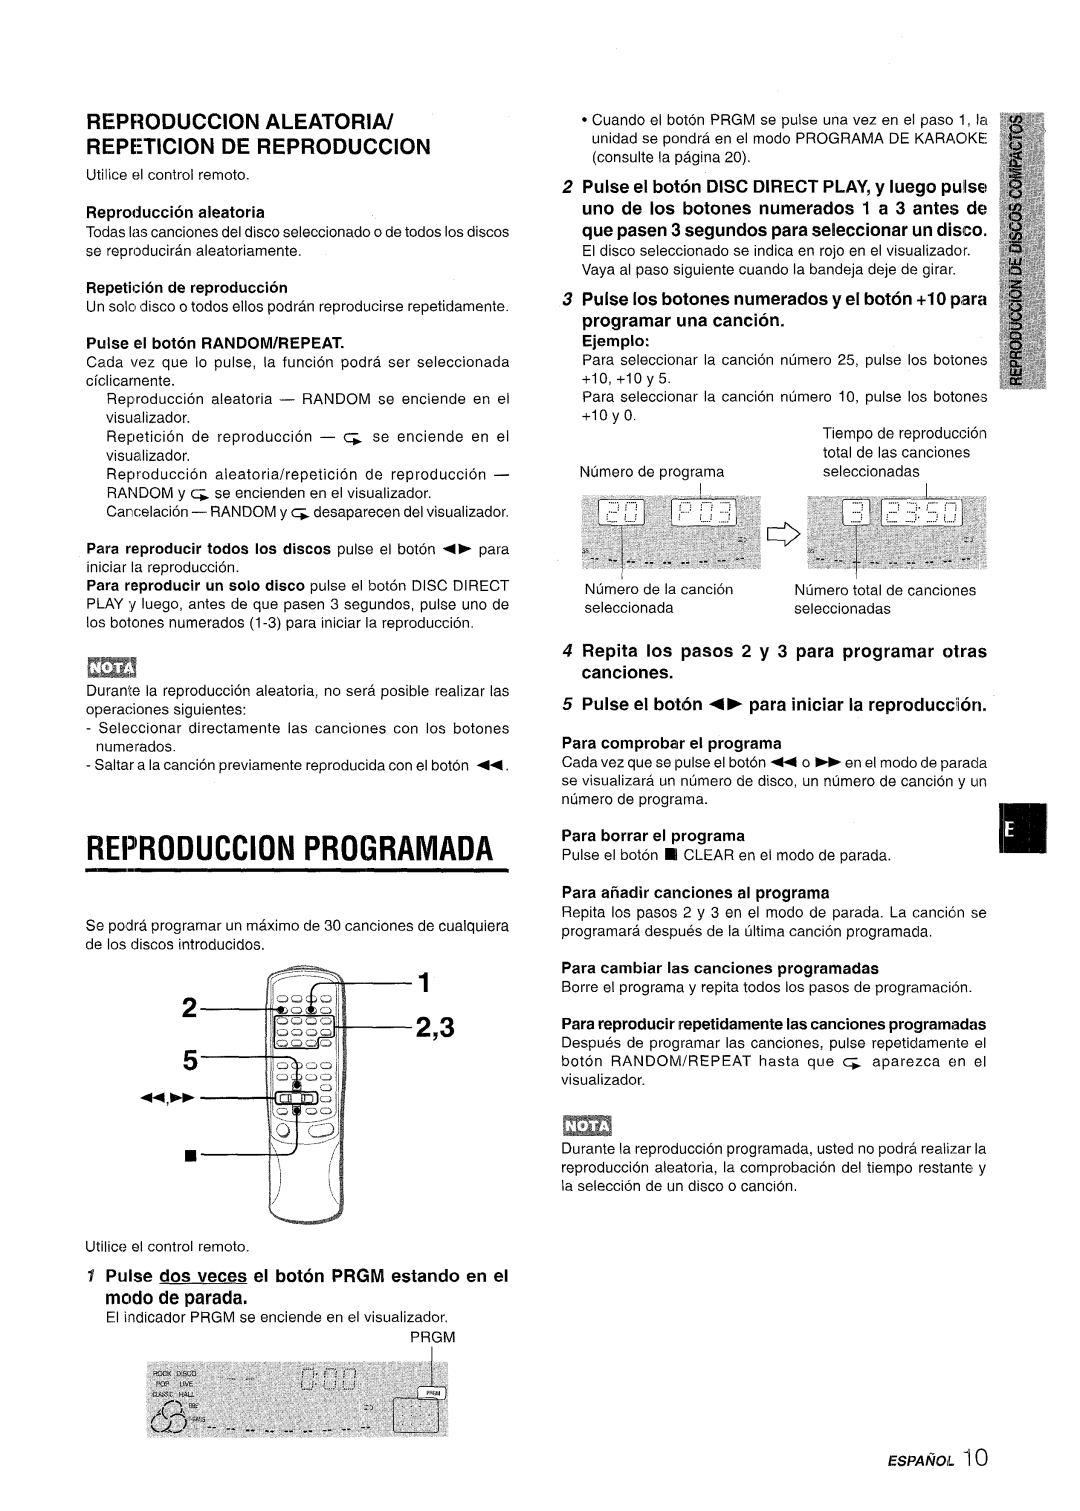 Aiwa CX-NMT50 Reproduction Programada, U,E+, REPF30DUCCION ALEATORIA/ REPETITION DE REPRODUCTION, Ejemplo, ESPAfiOL “1O 